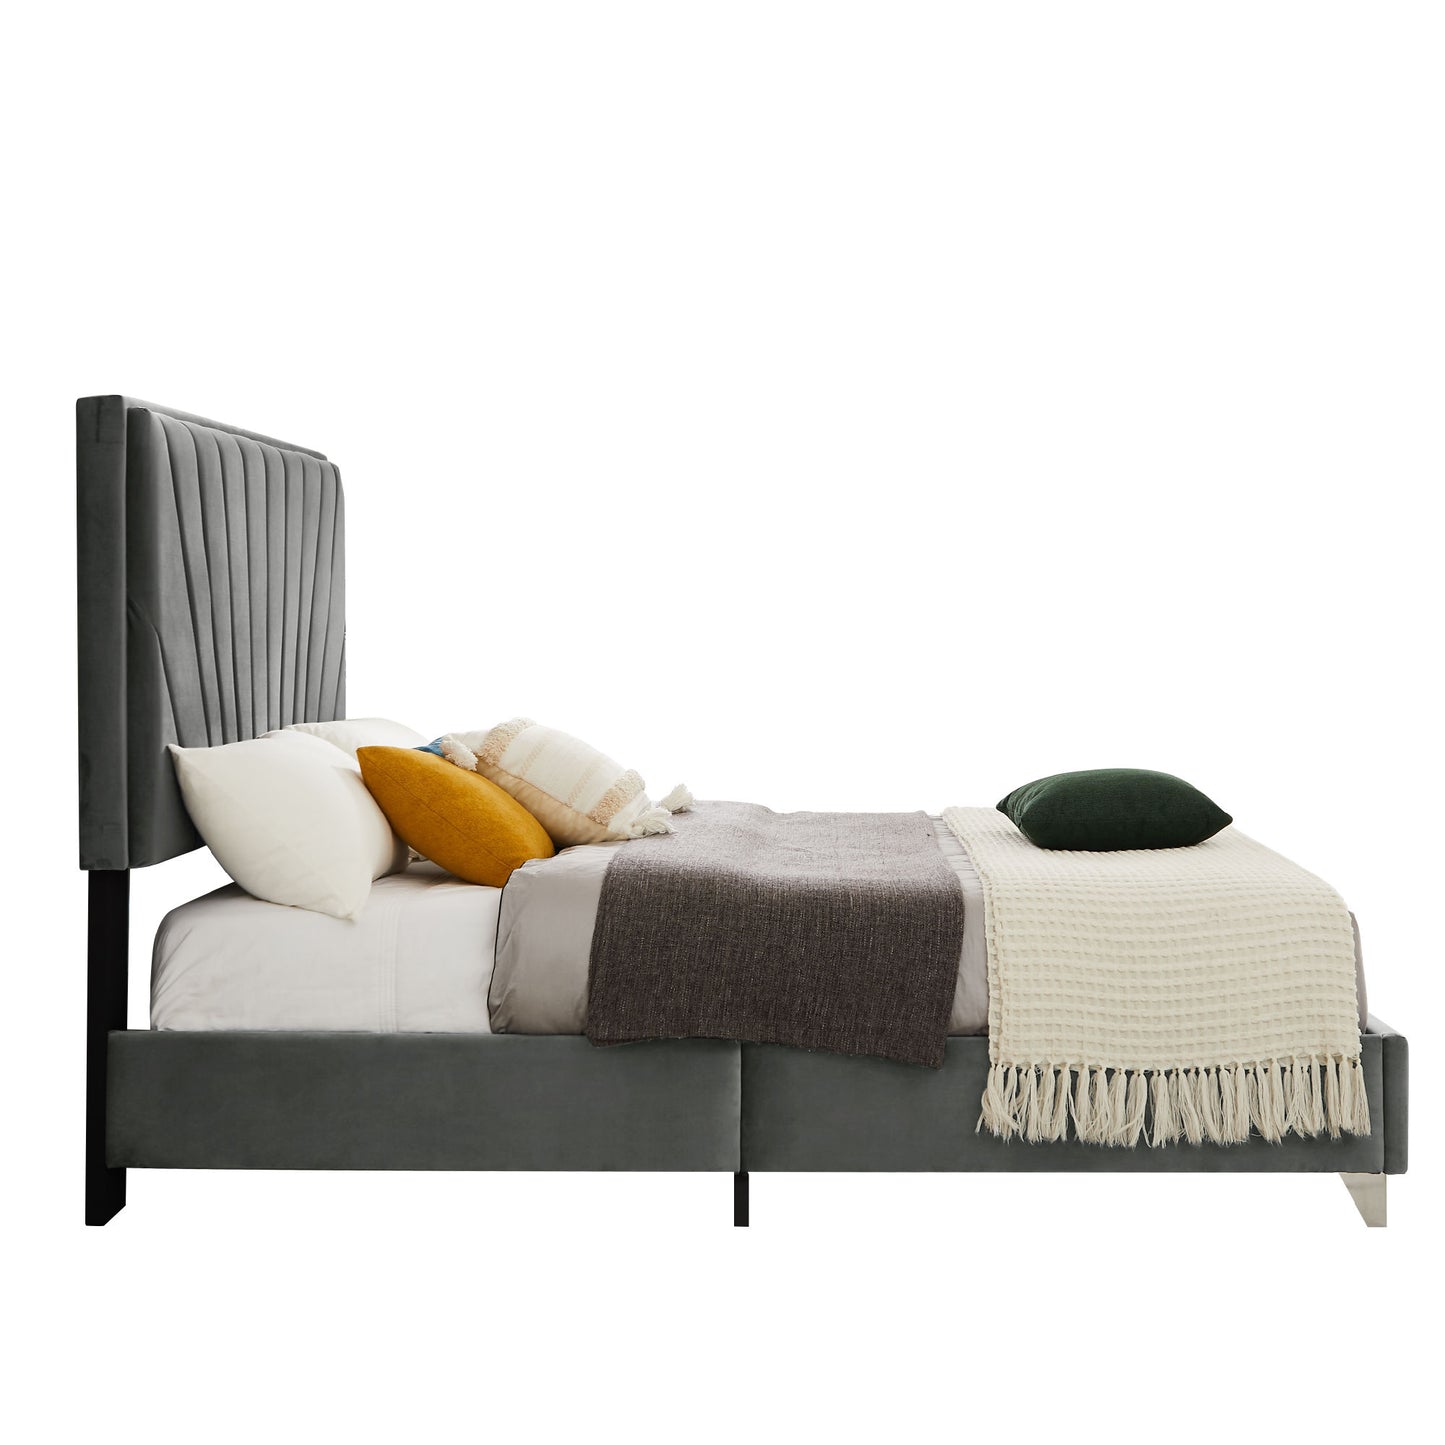 Queen bed Beautiful line stripe cushion headboard, Gray Flannelette